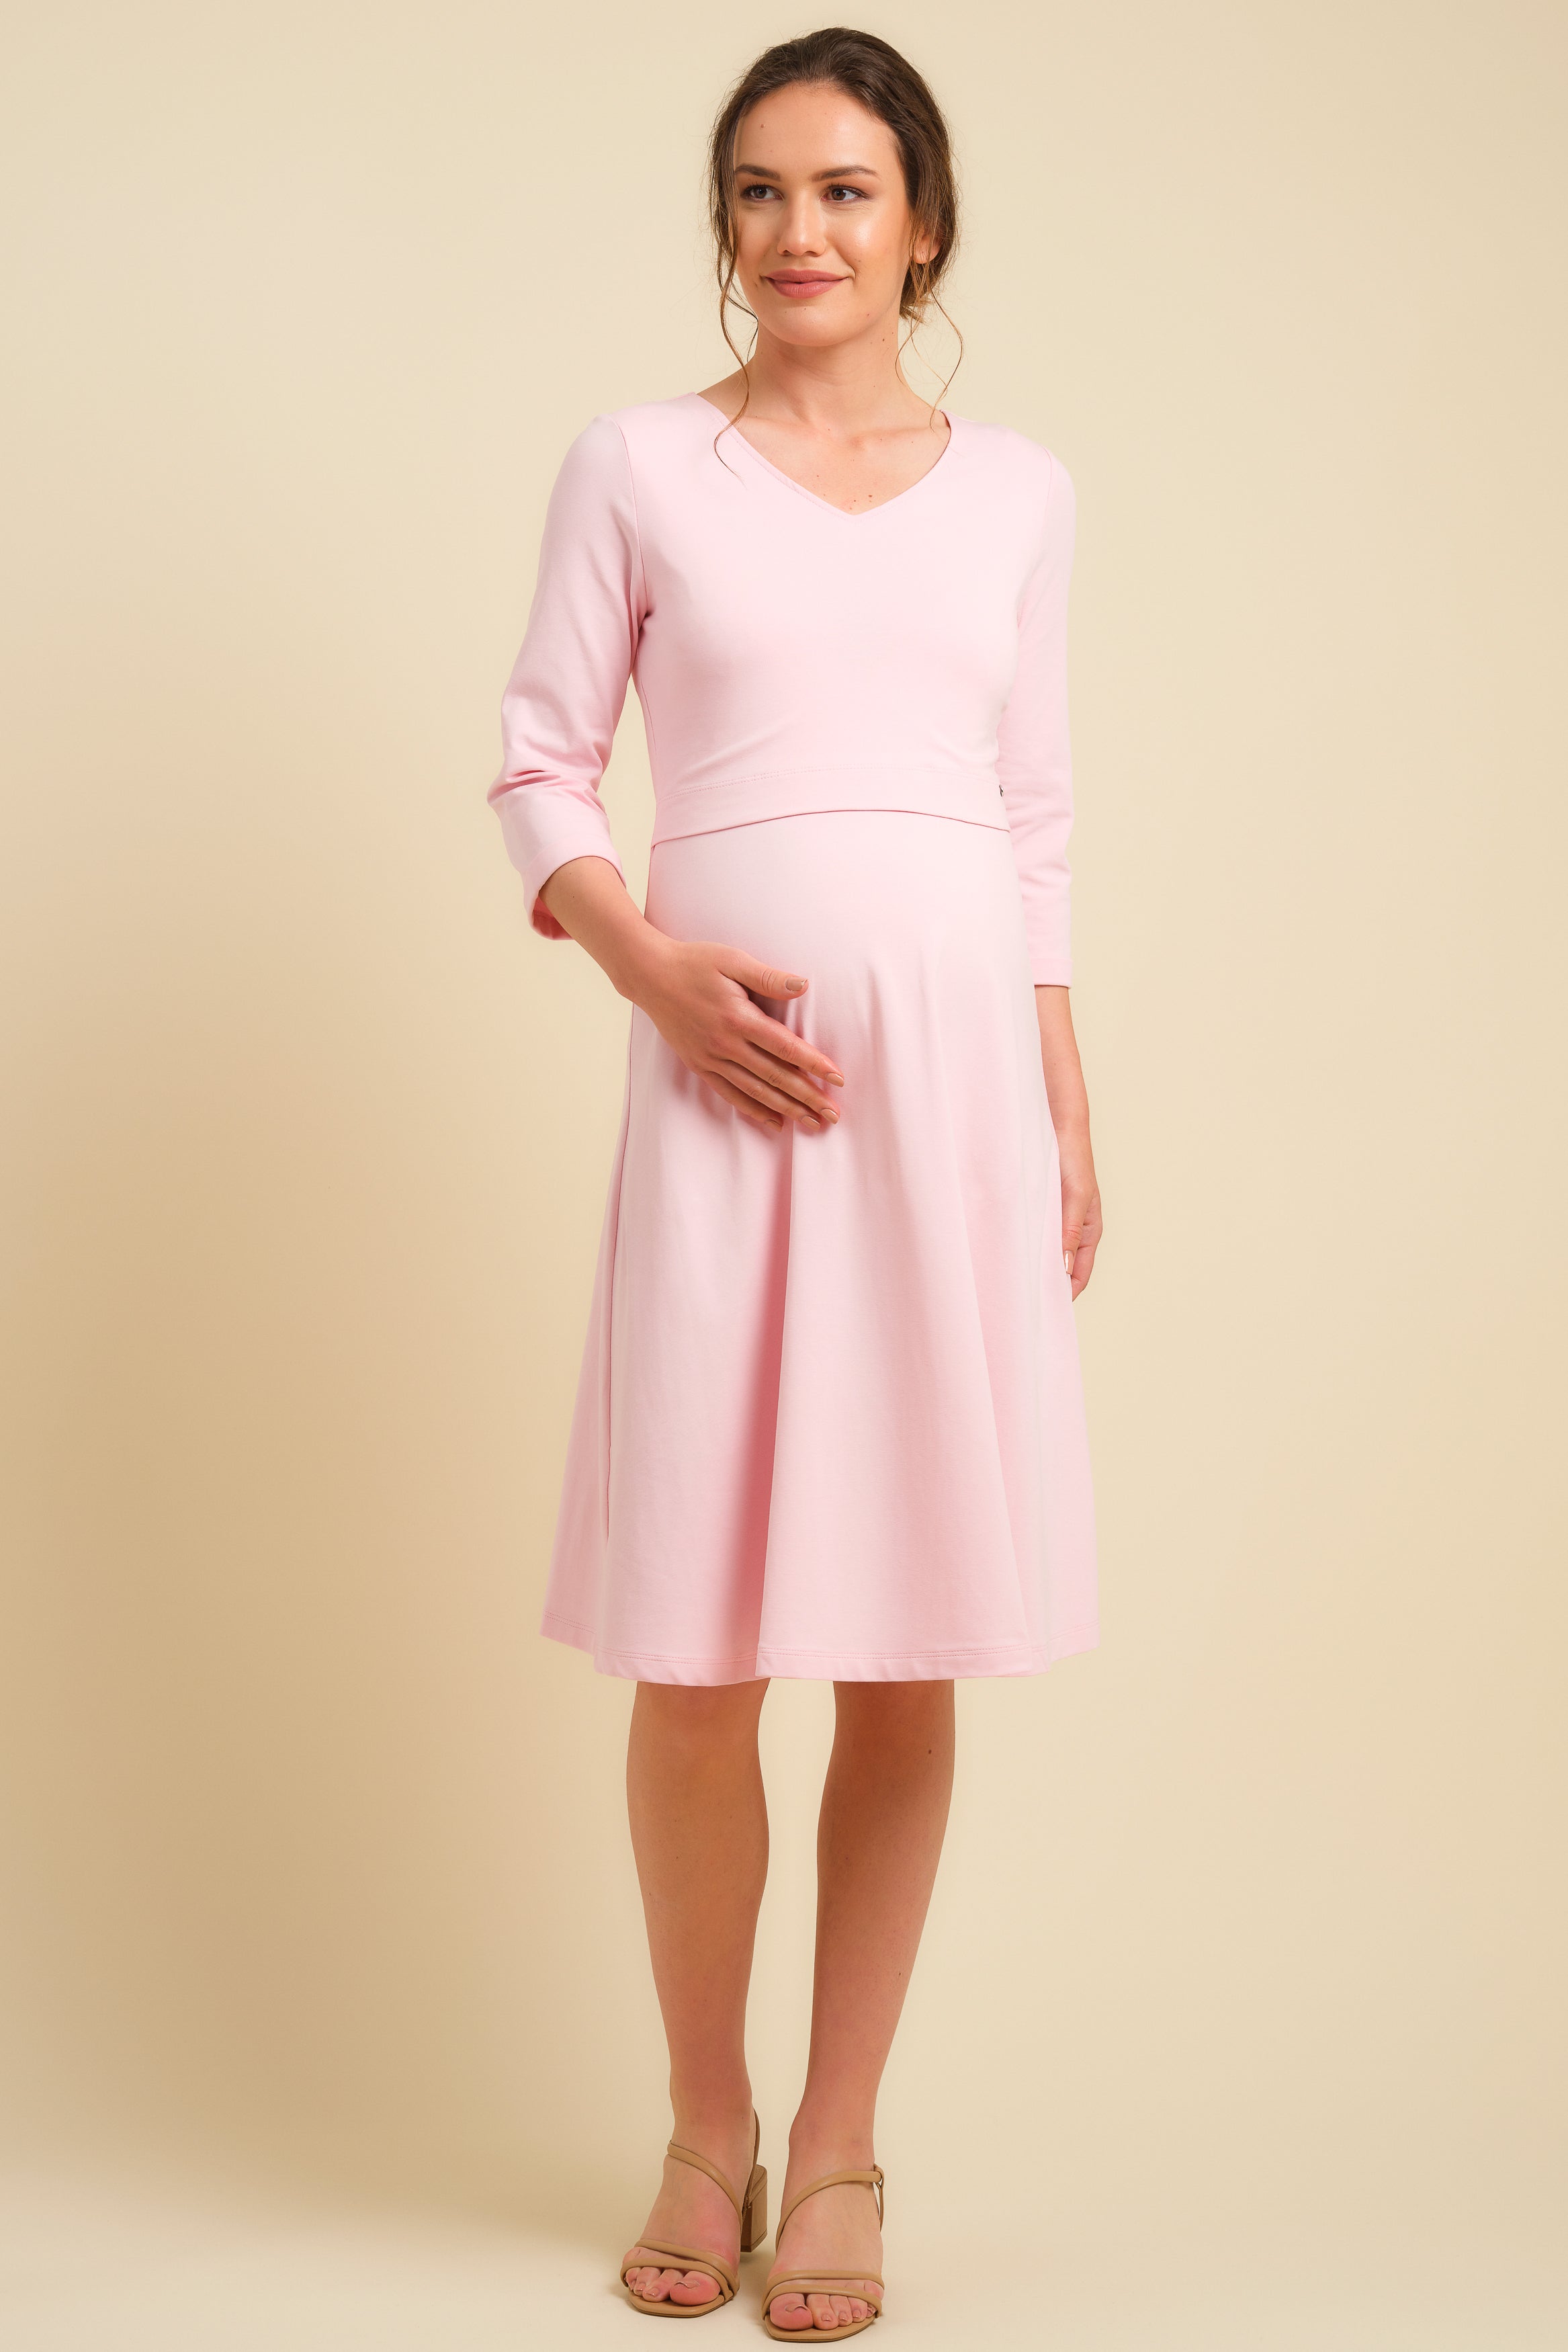 Blush Pink Pleated Maternity Dress